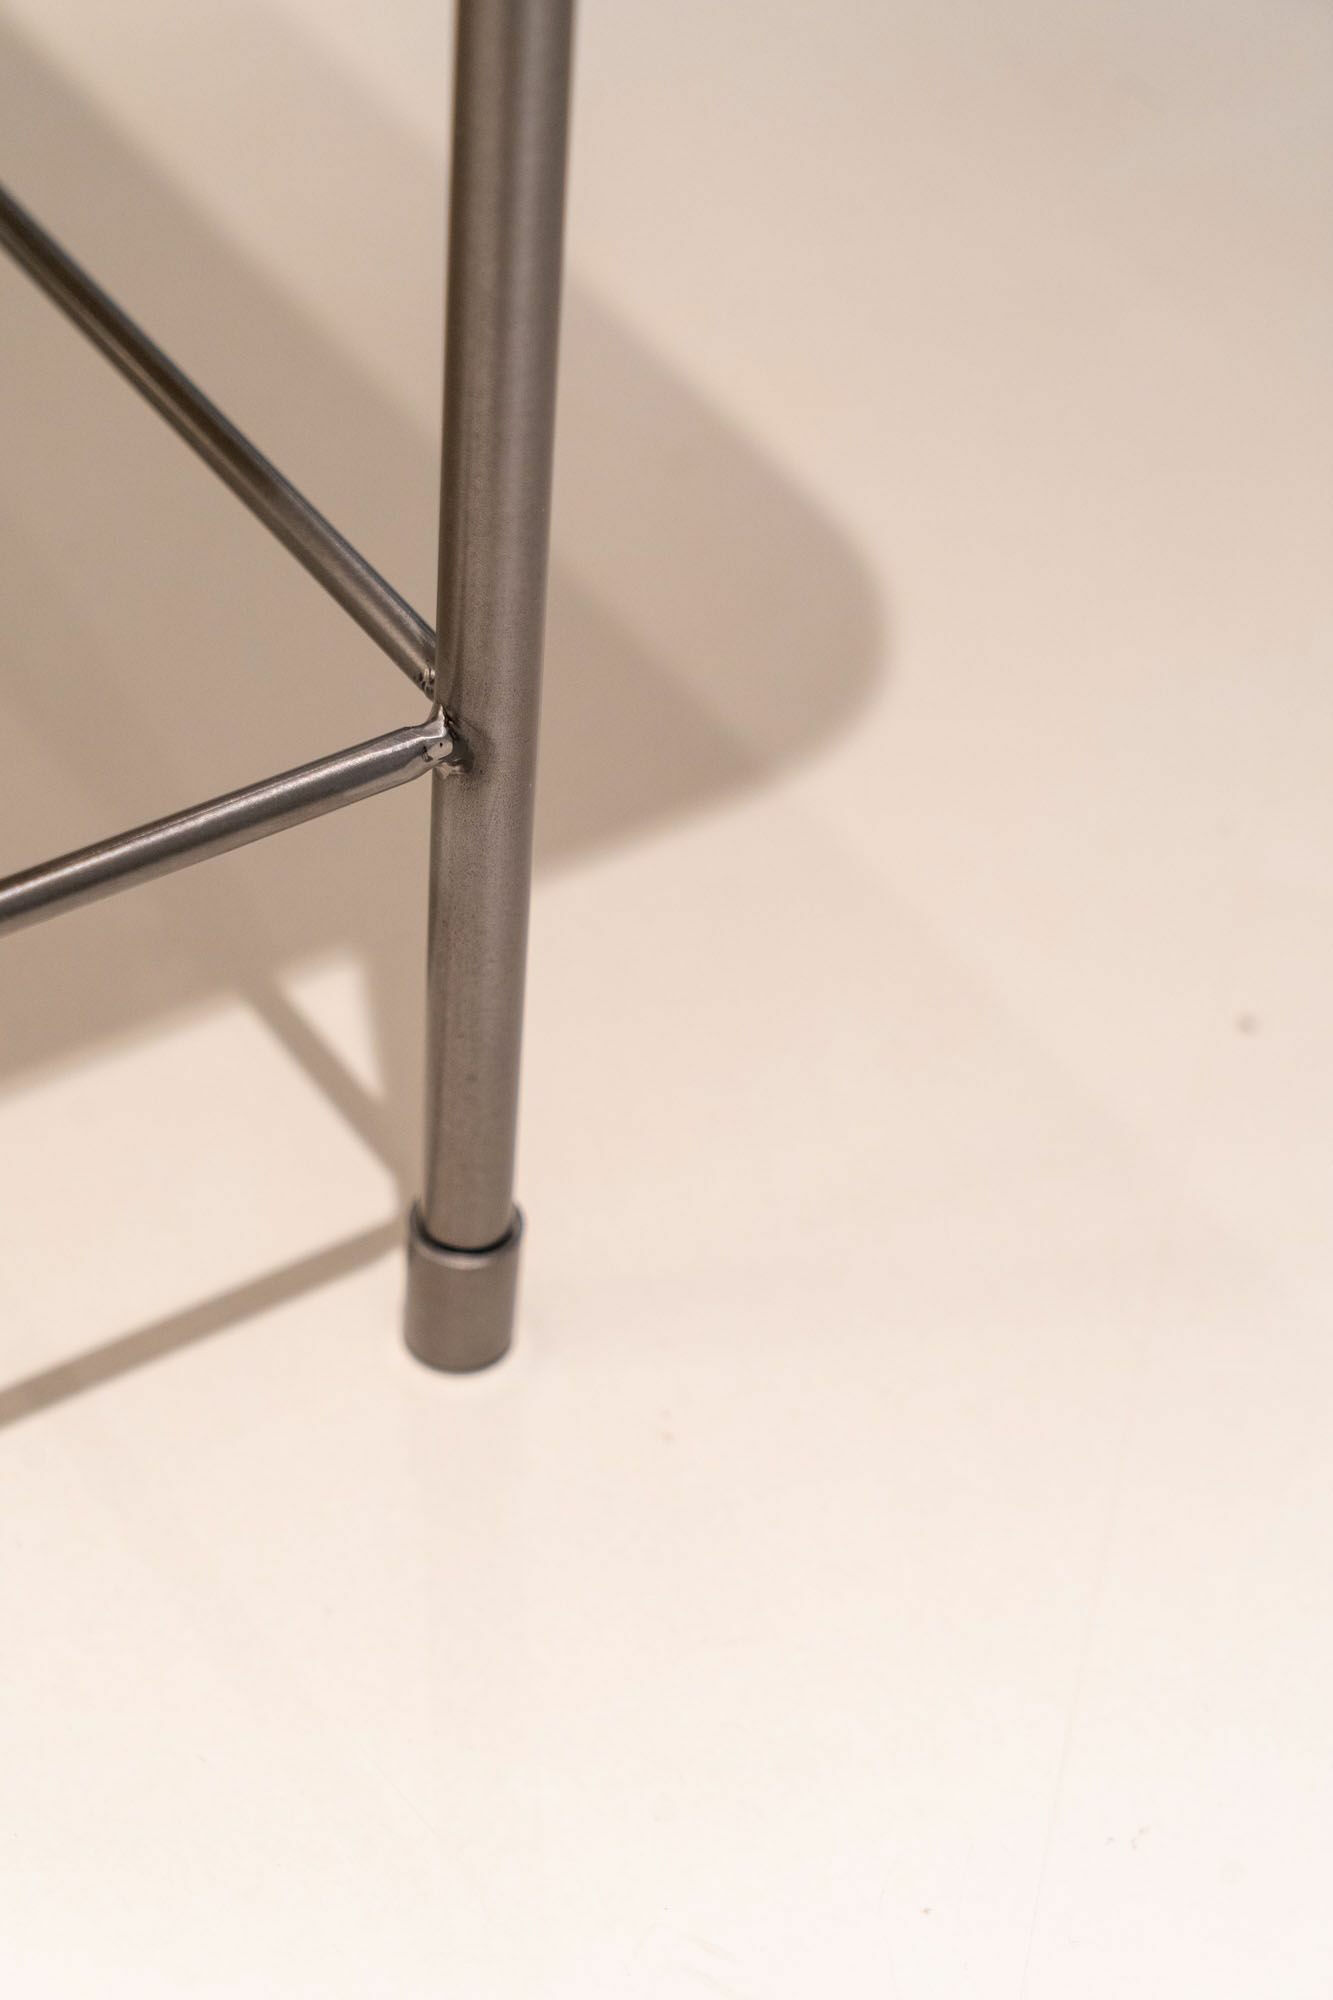 baxter-beistelltisch-table-au-platte-polyester-weiss-glaenzend-mf-0006281-001-3